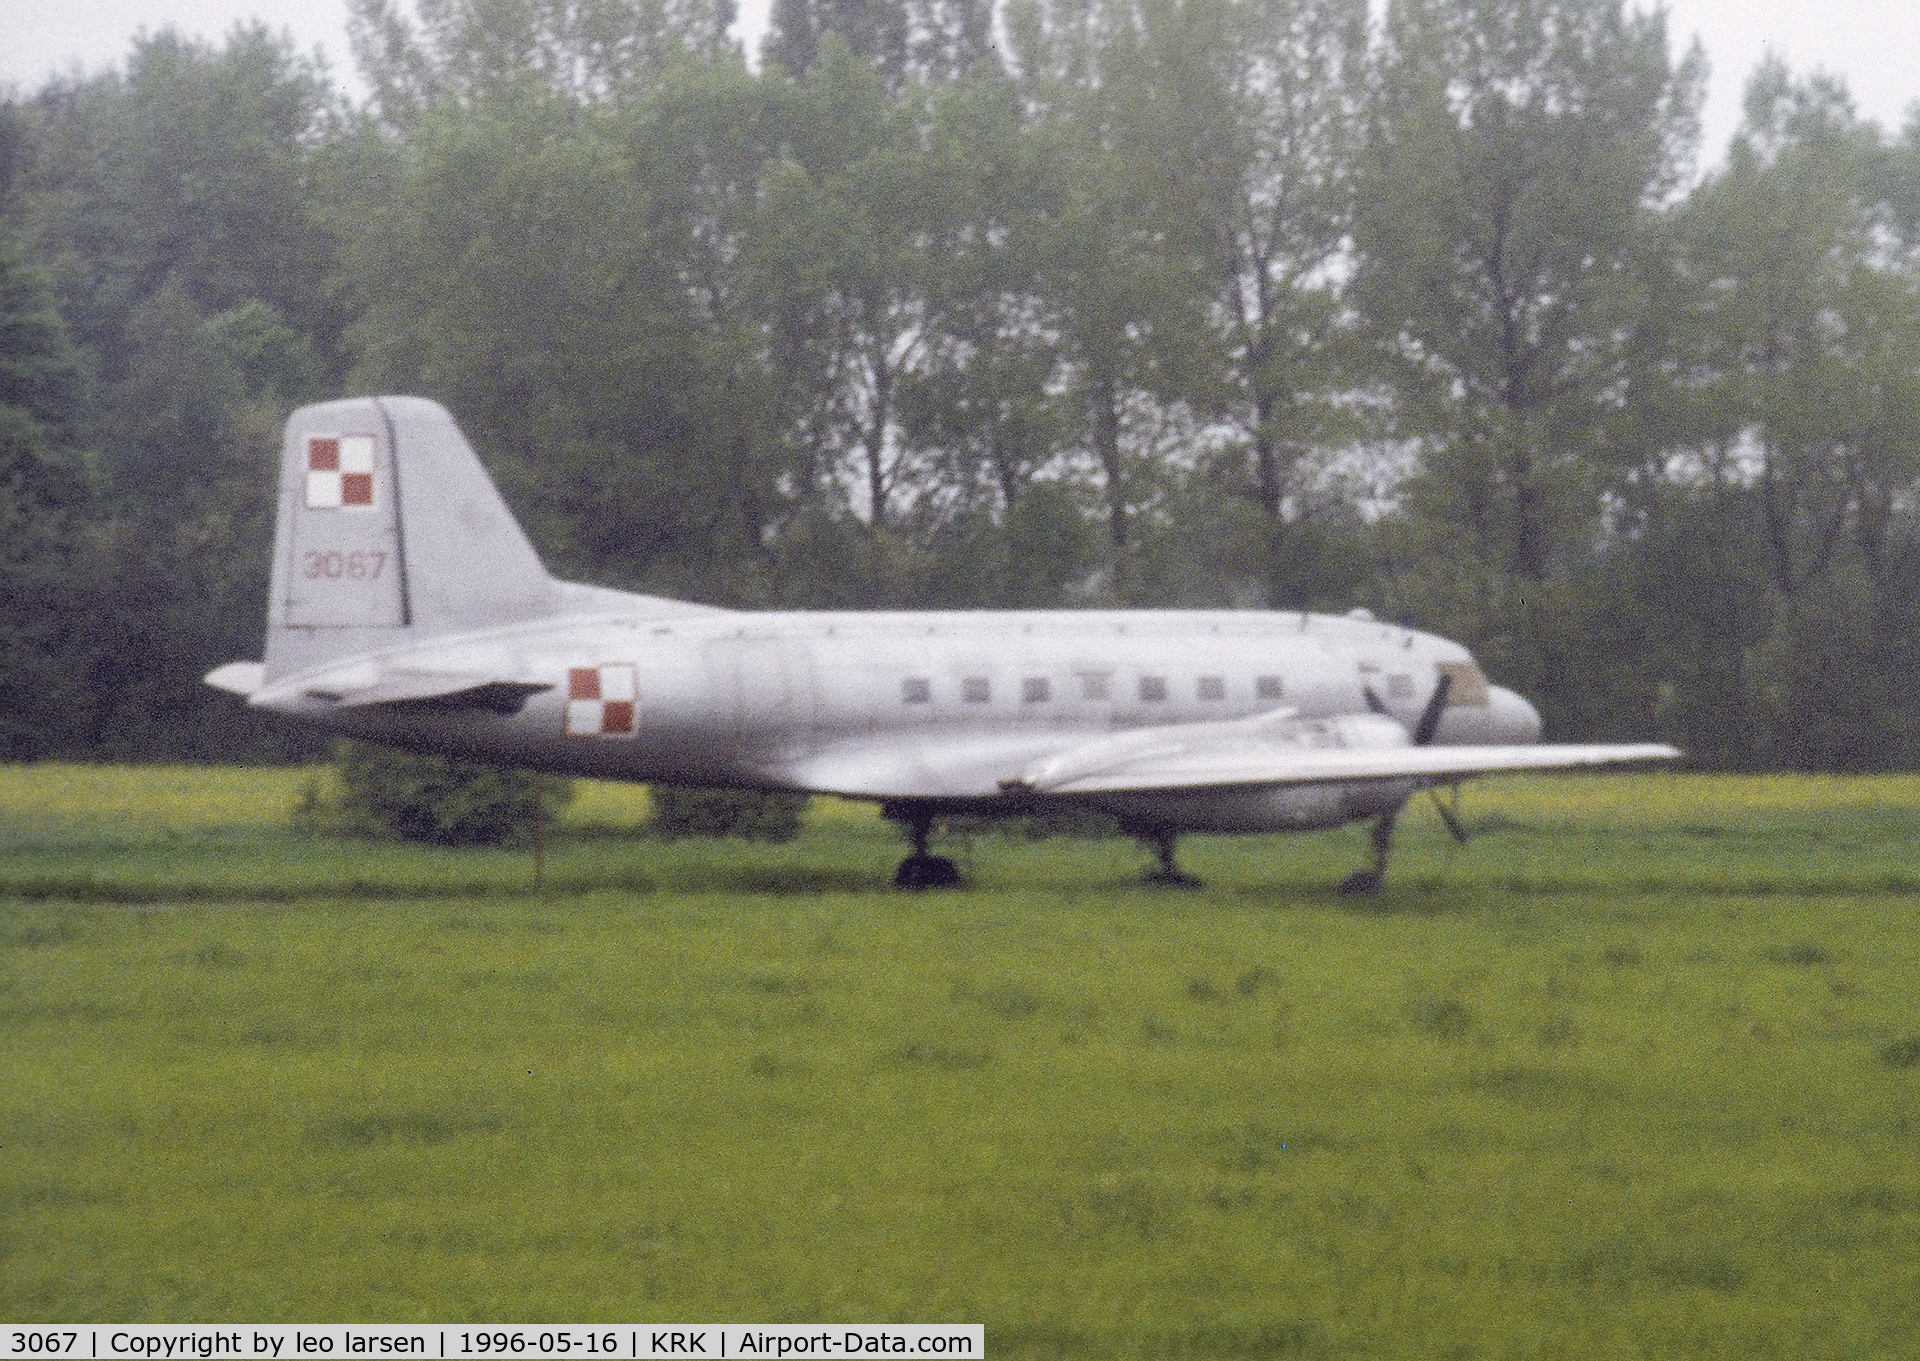 3067, 1959 Ilyushin (VEB) IL-14T C/N 14 803 067, Krakow 16.5.1996